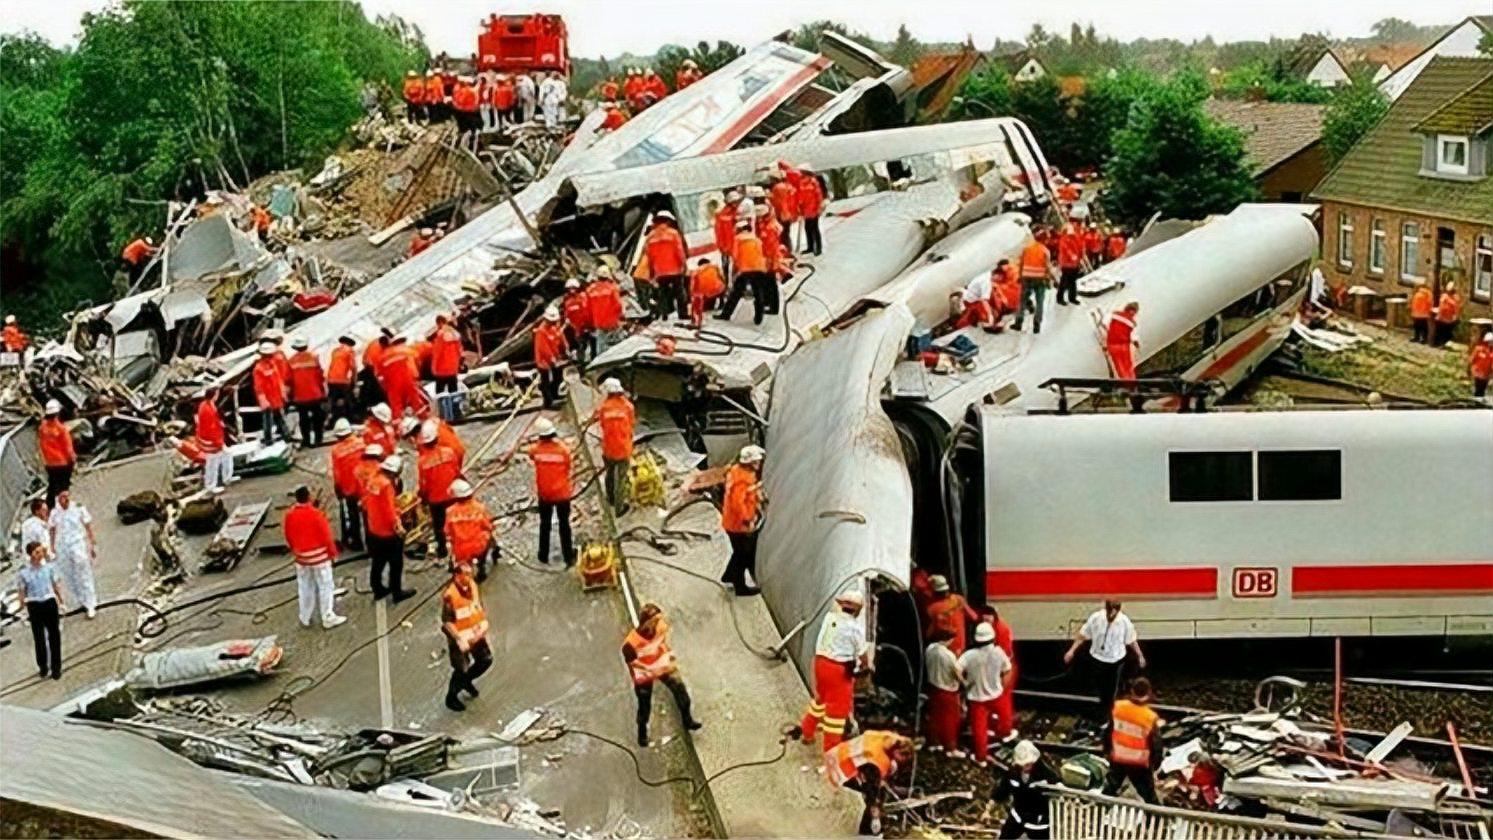 中国高铁脱轨图片